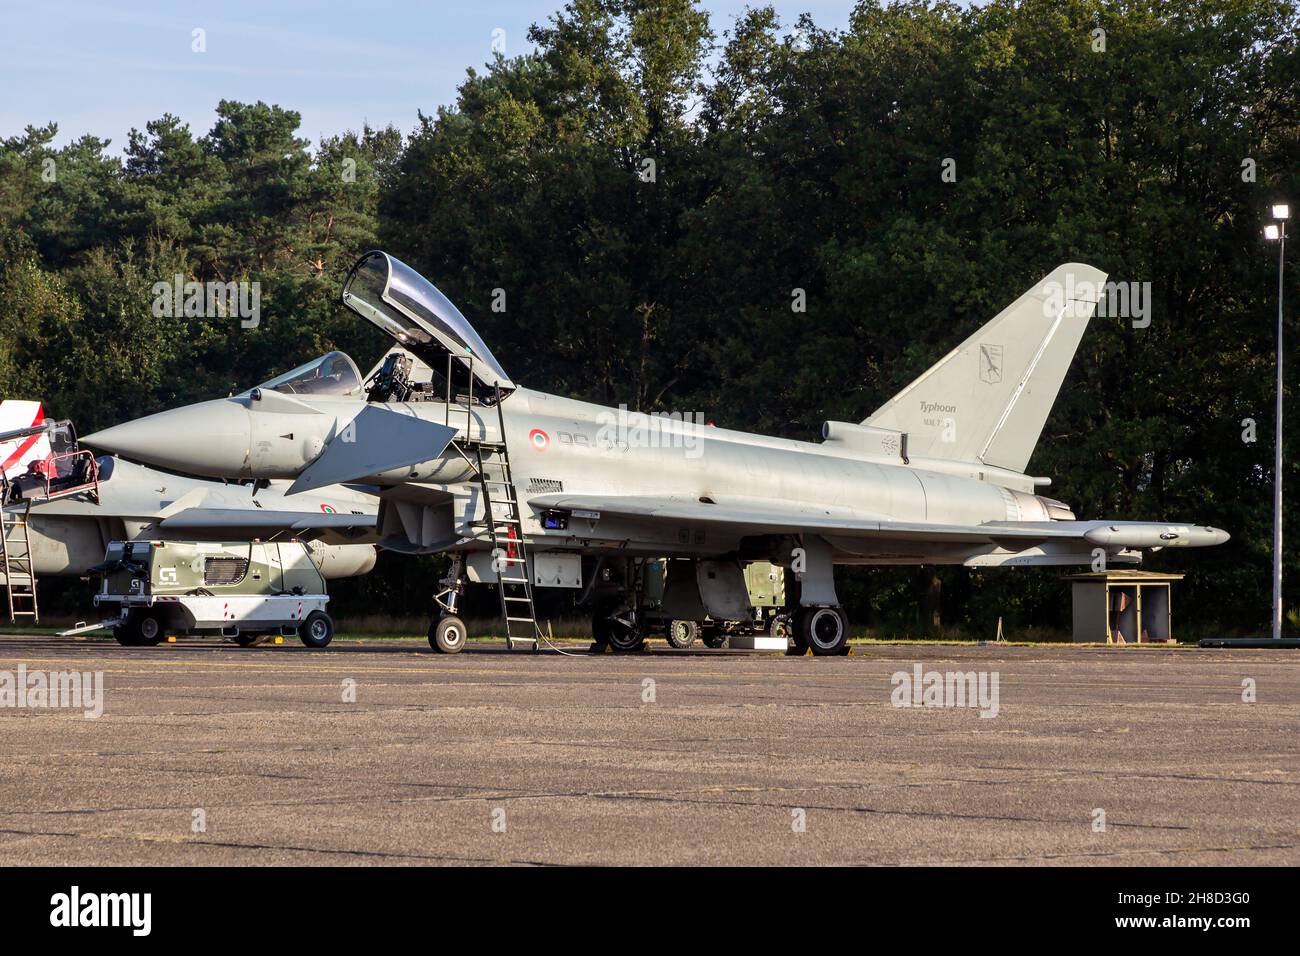 L'Aeronautica militare Italiana Eurofighter Typhoon sul tarmac della base aerea Kleine-Brogel. Belgio - 13 settembre 2021 Foto Stock